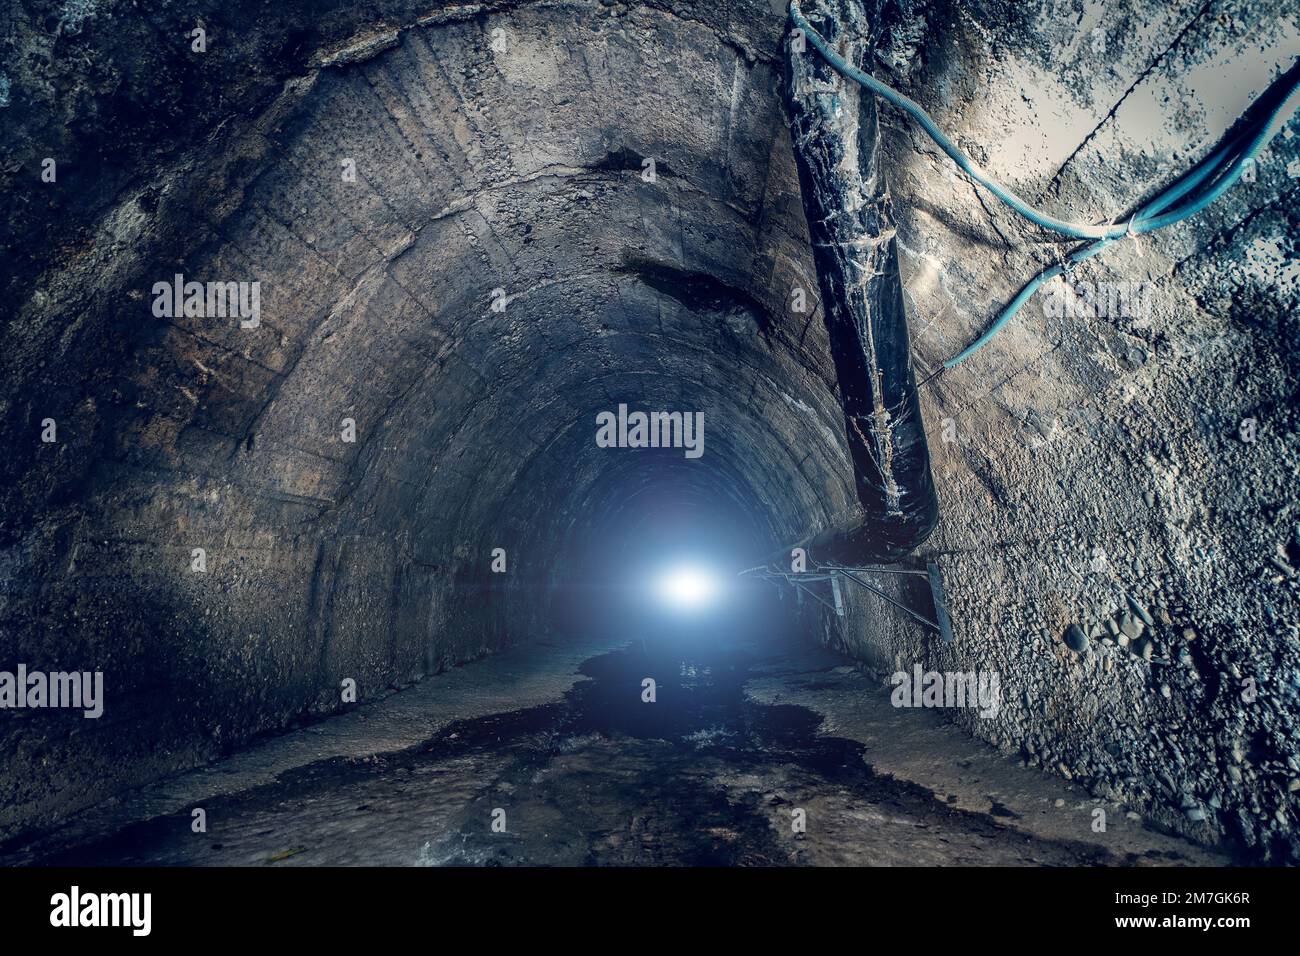 Abwasser im großen unterirdischen Abwassertunnel. In einem dunklen städtischen Abwasserkanal-Tunnel mit Licht am Ende Stockfoto